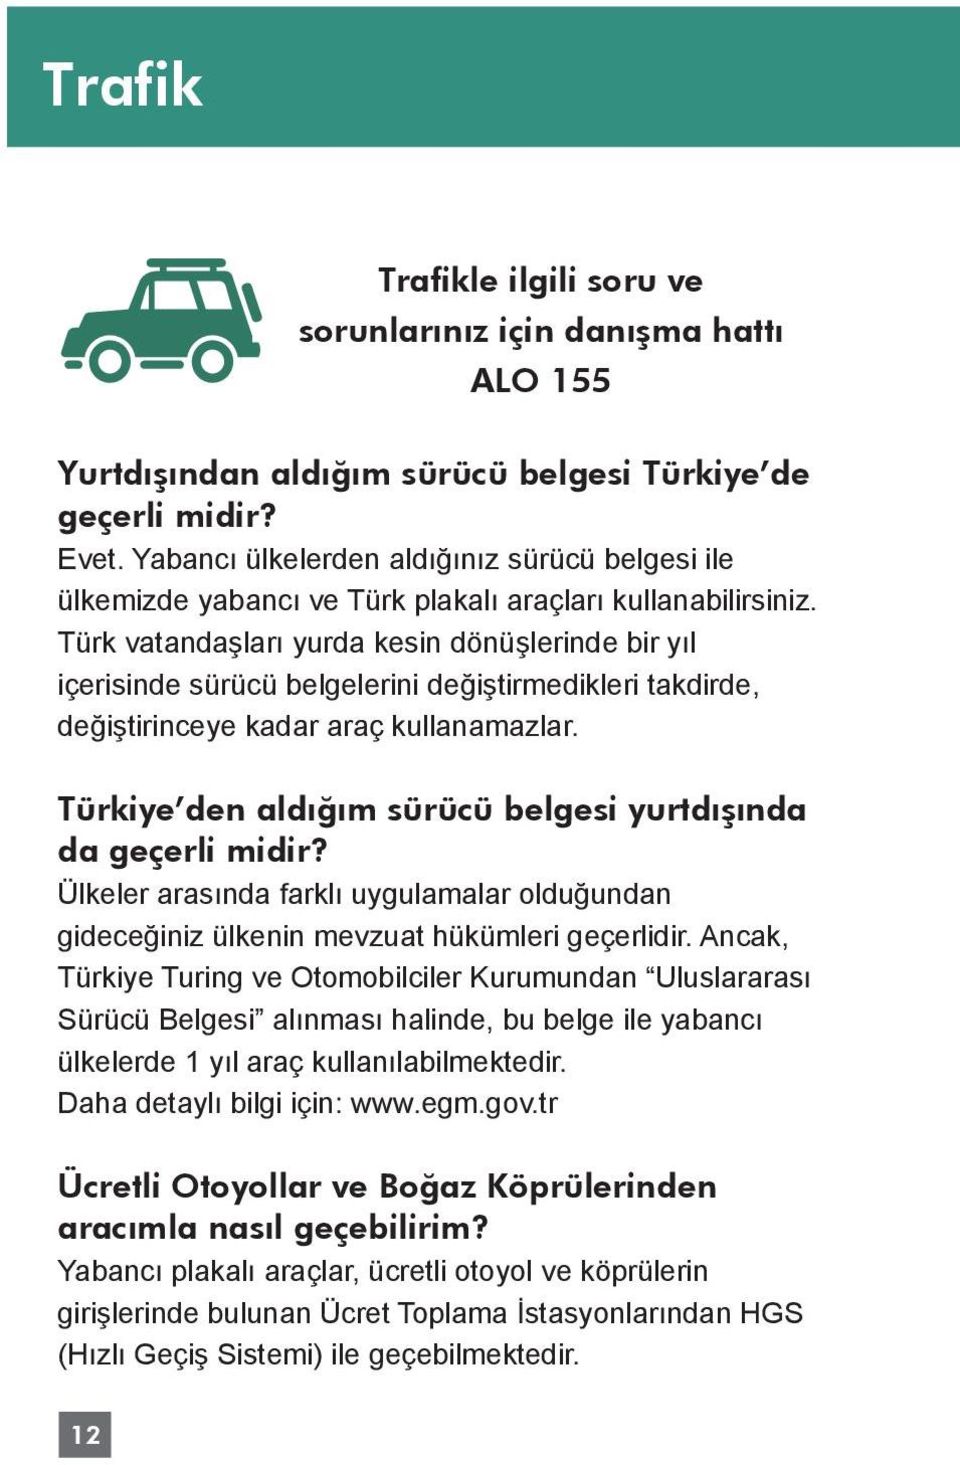 Türk vatandaşları yurda kesin dönüşlerinde bir yıl içerisinde sürücü belgelerini değiştirmedikleri takdirde, değiştirinceye kadar araç kullanamazlar.